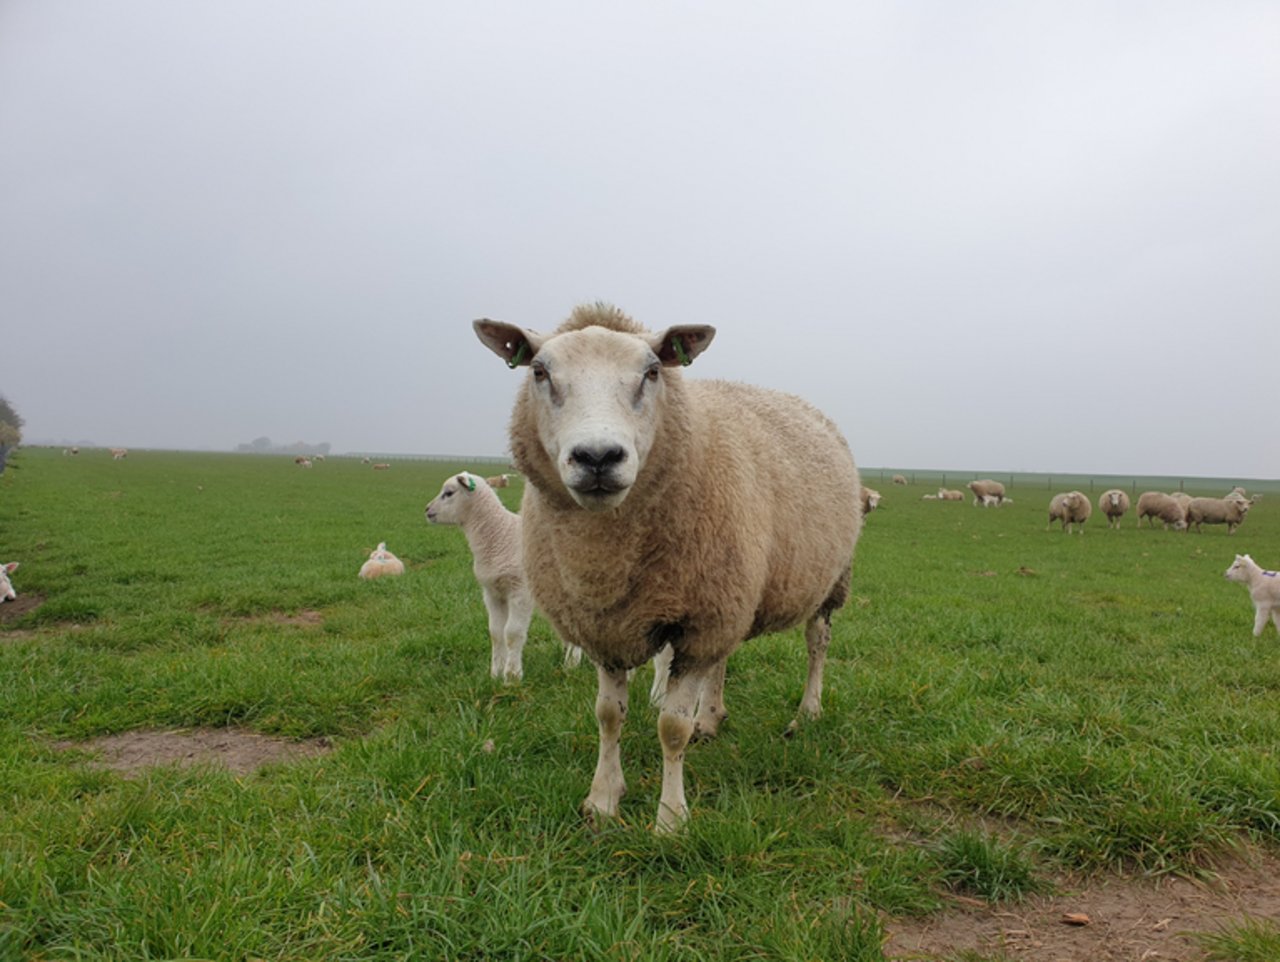 Die Moderhinke kommt bei jedem sechsten der untersuchten Schafe vor. (Symbolbild lid/ji)